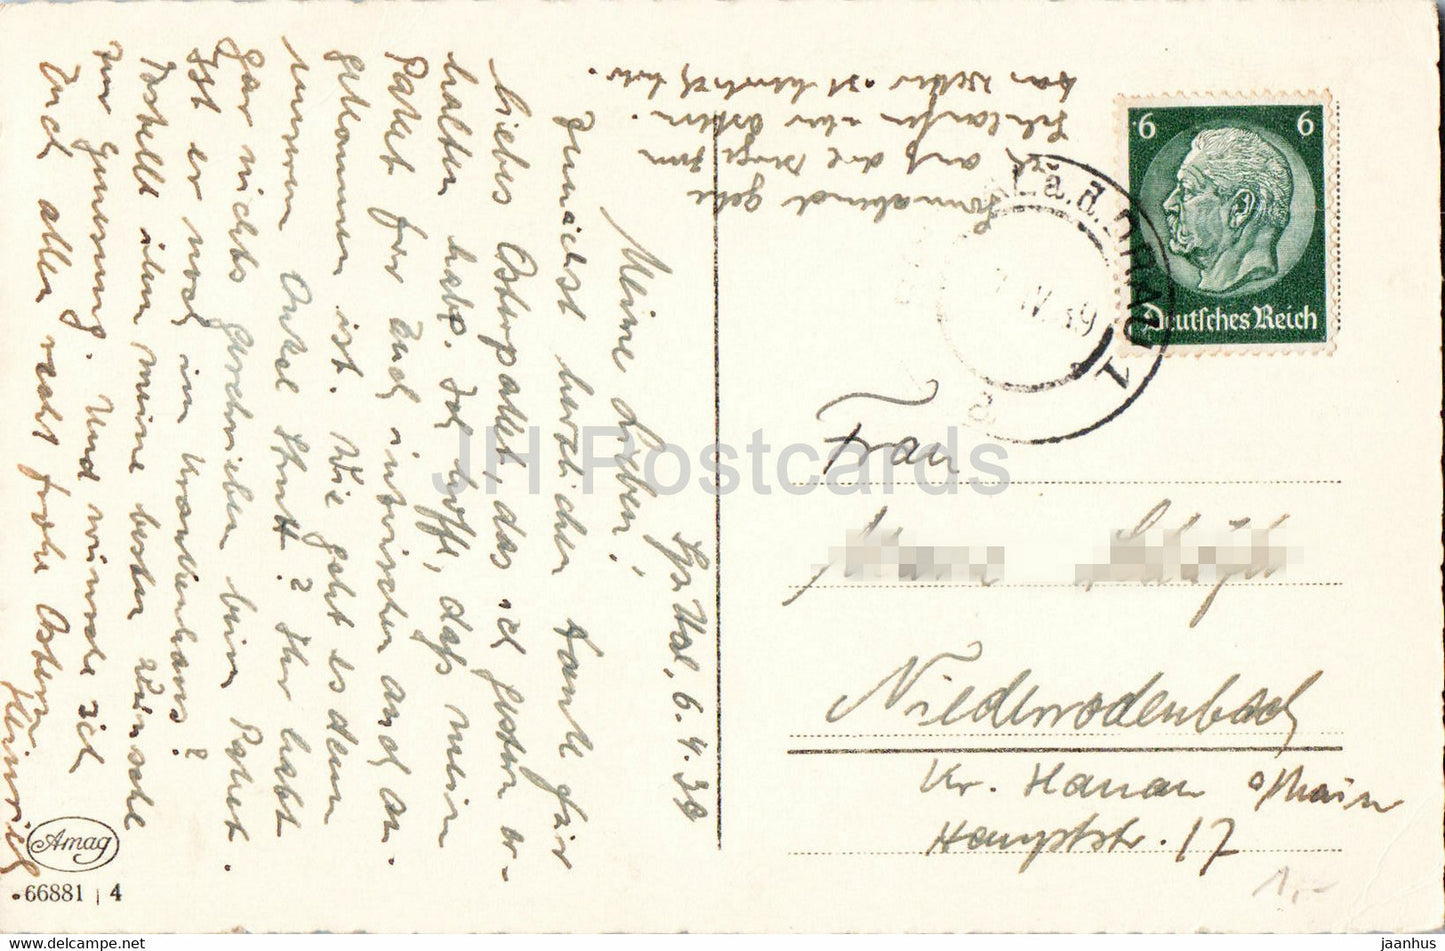 Ostergrußkarte - Herzliche Ostergrusse - 66881 - alte Postkarte - 1939 - Deutschland - gebraucht